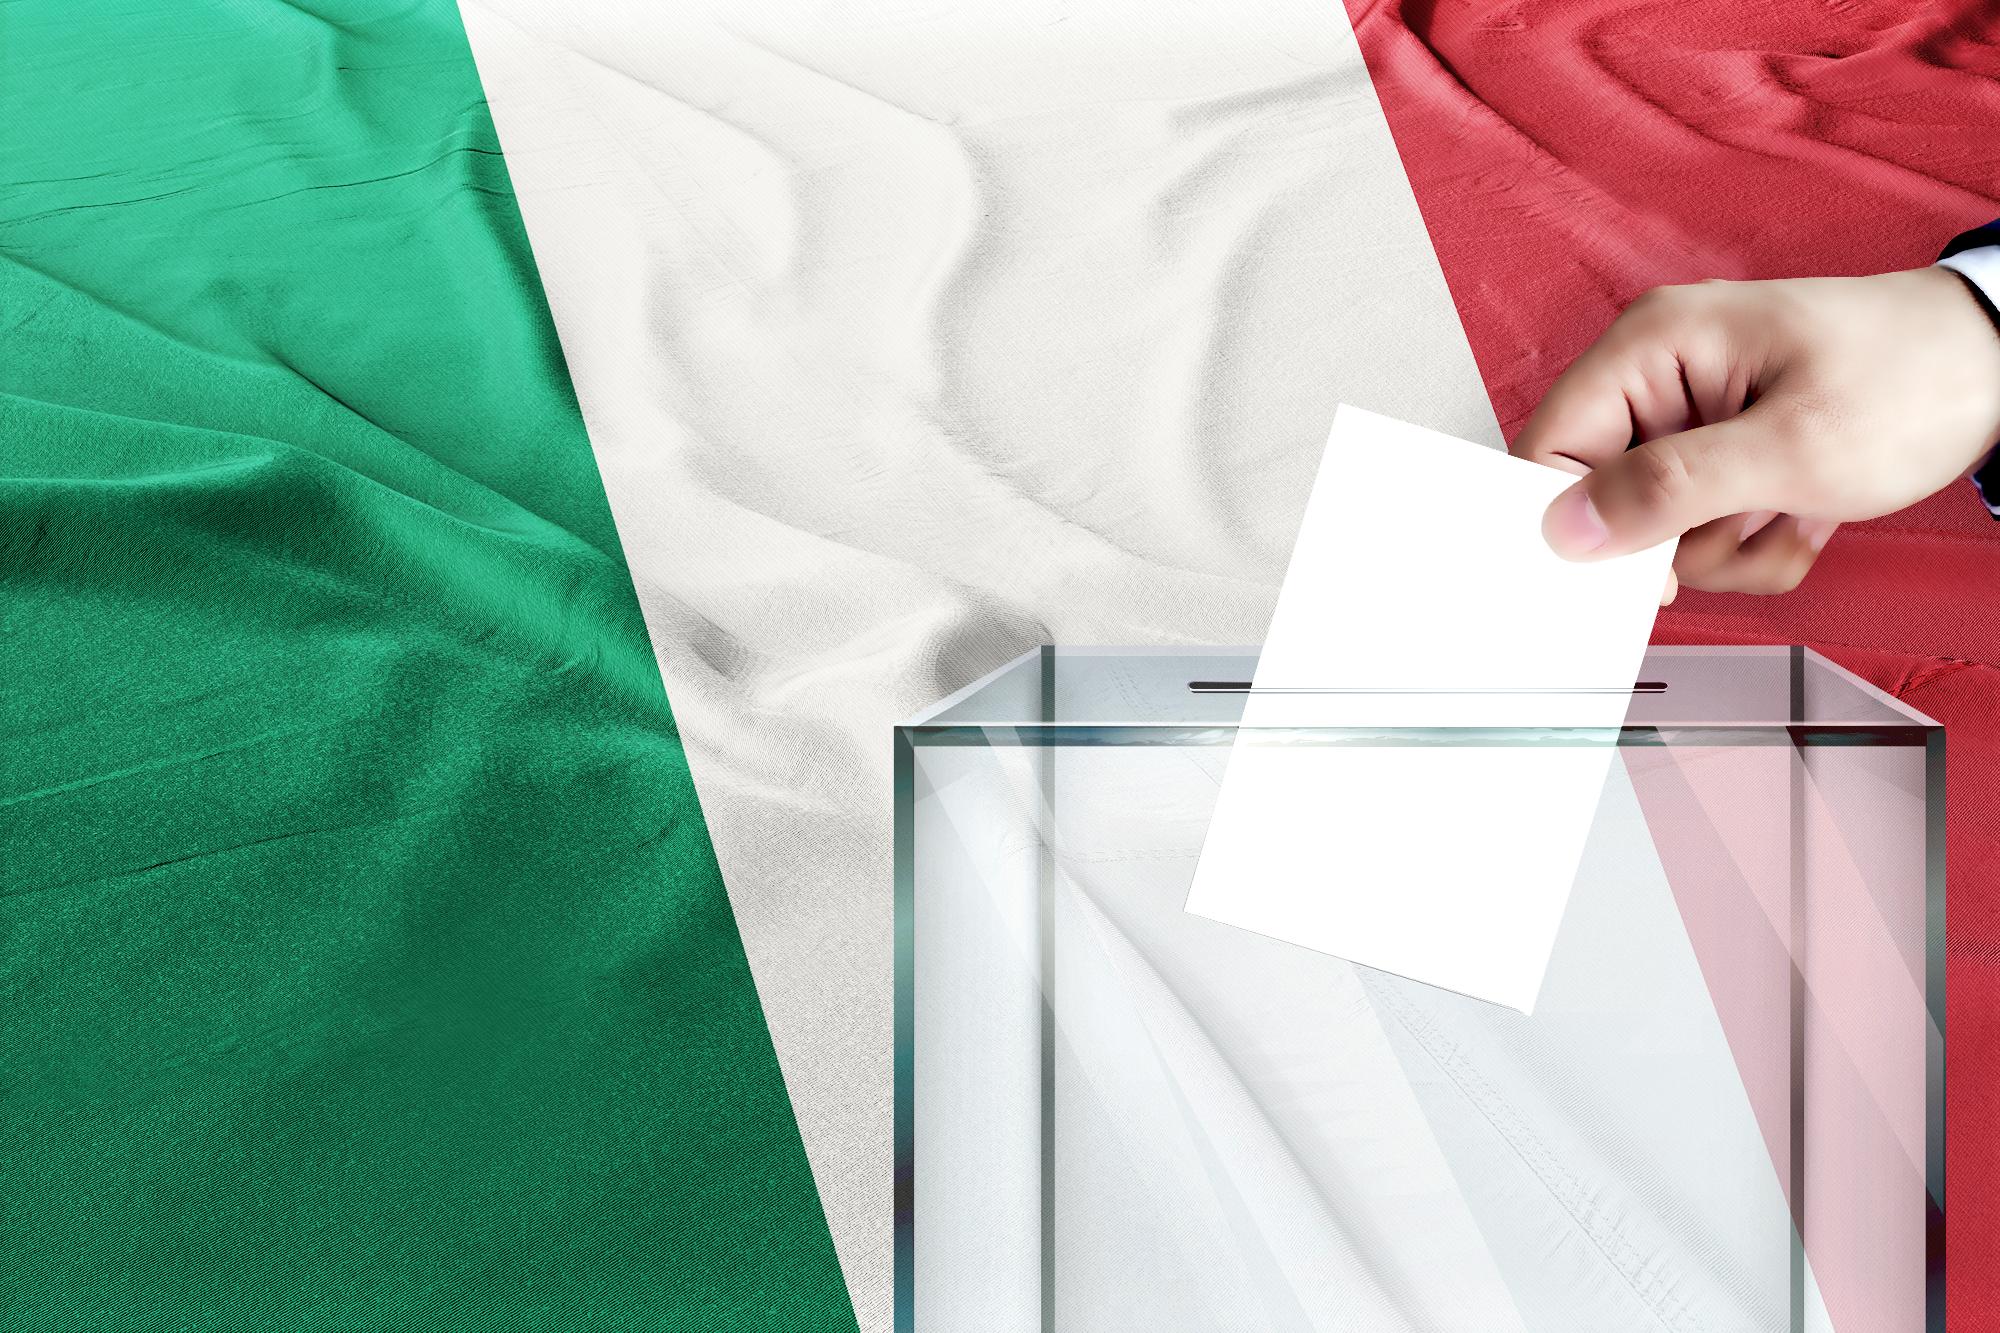 Olaszország két legnépesebb tartományában tartanak helyhatósági választásokat